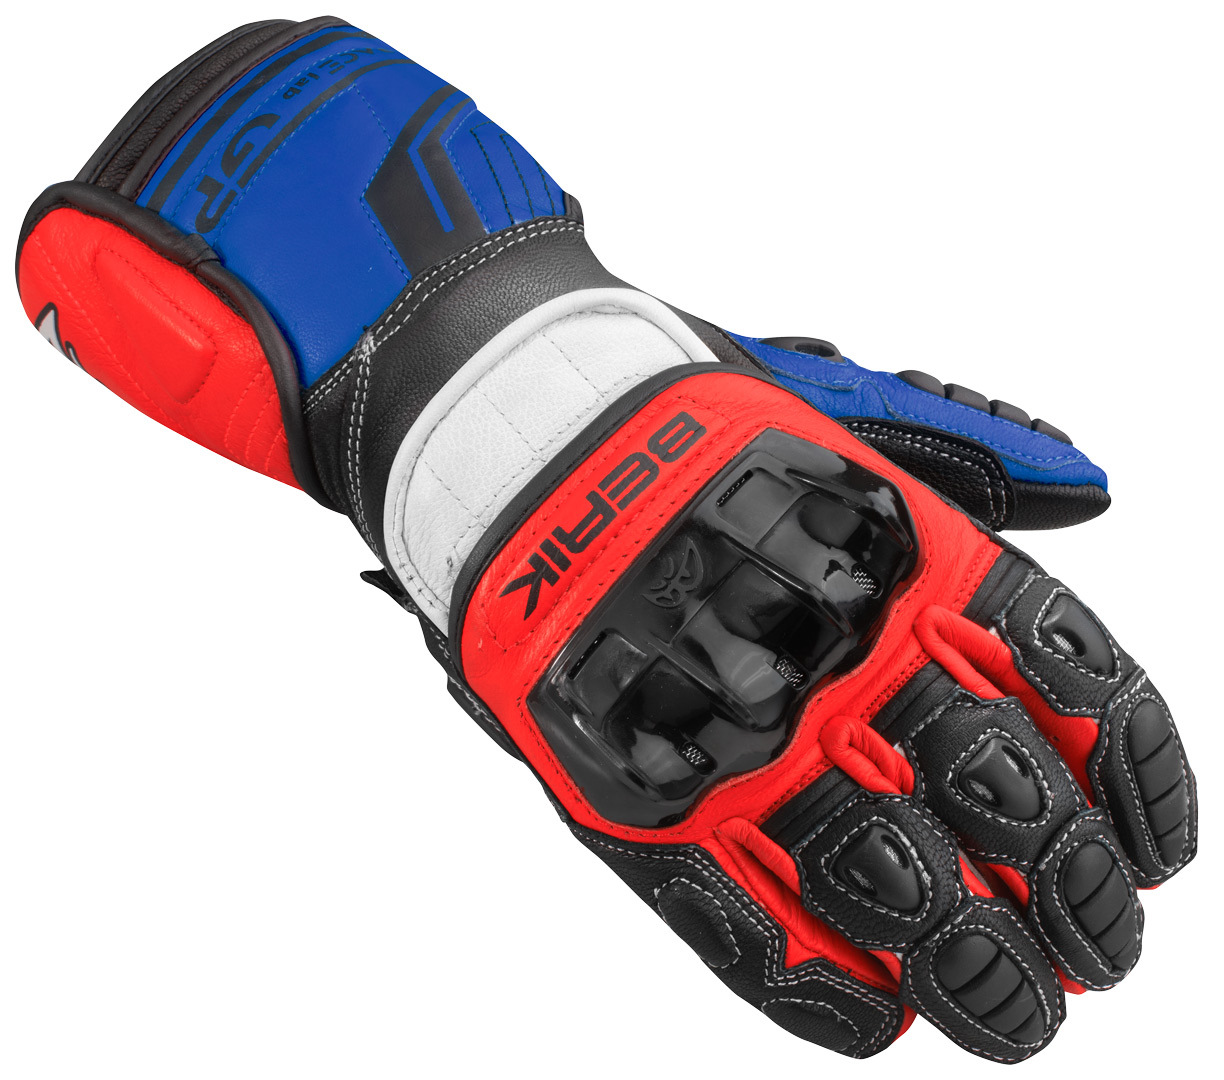 Мотоциклетные перчатки Berik Track Pro с регулируемыми запястьями, черный/синий/красный мотоциклетные перчатки track pro berik черный красный желтый